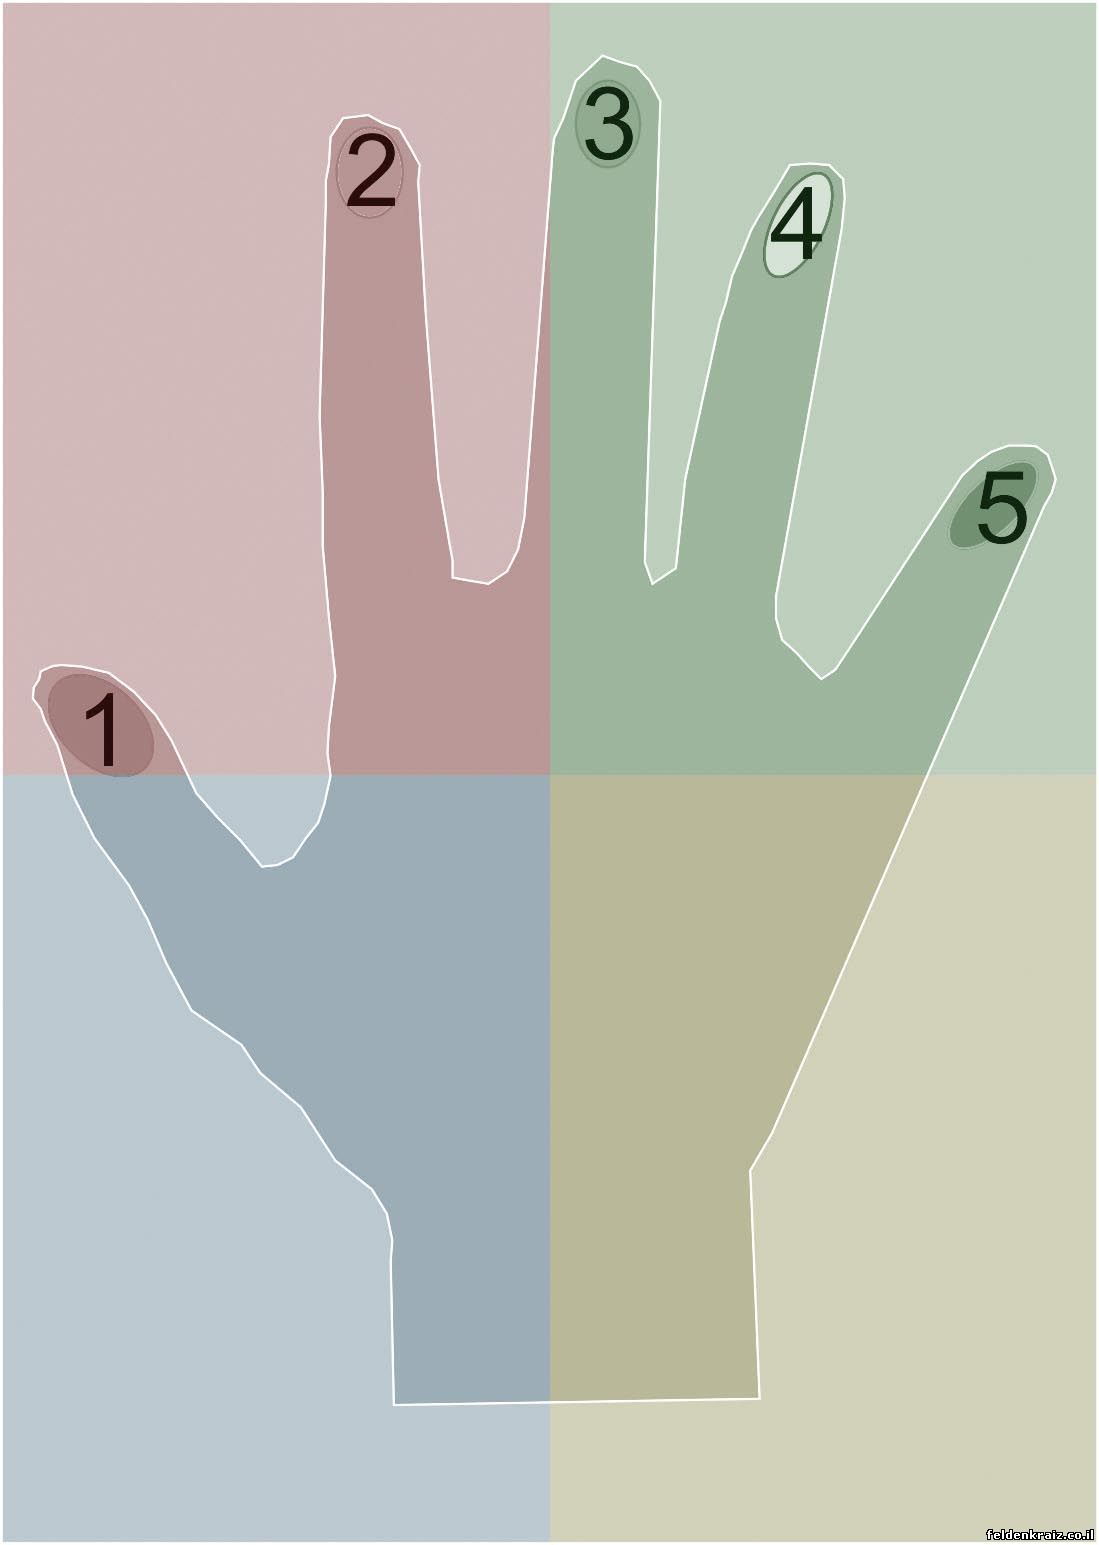 На рисунке дано изображение ладони для упражнения, известного под названием «часы на руке». Даны также номера пальцев от одного (большой палец) до пяти (мизинец)